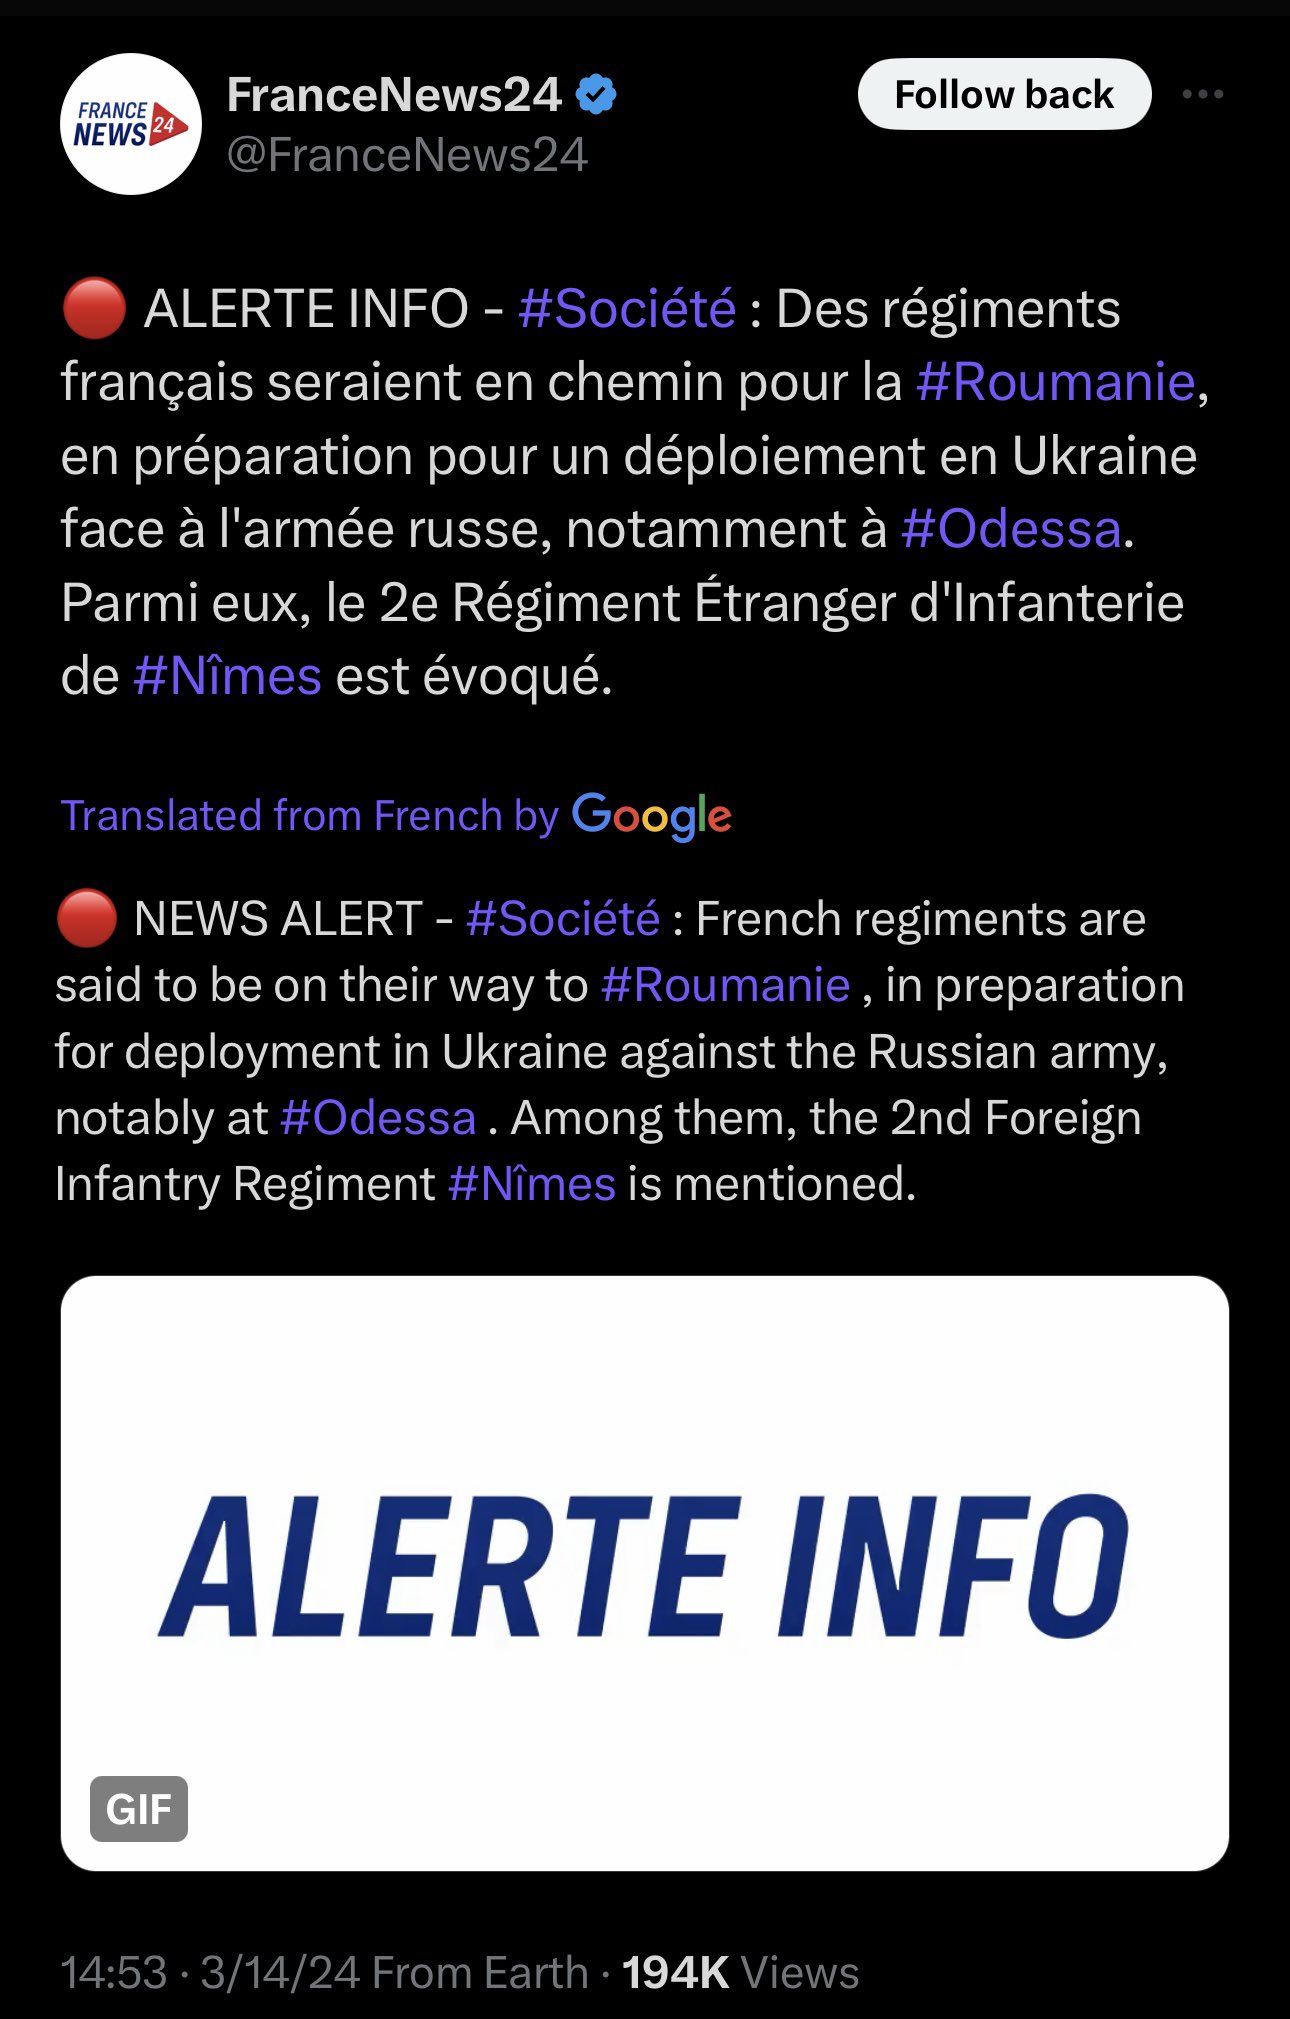 Francuscy żołnierze według FranceNews24